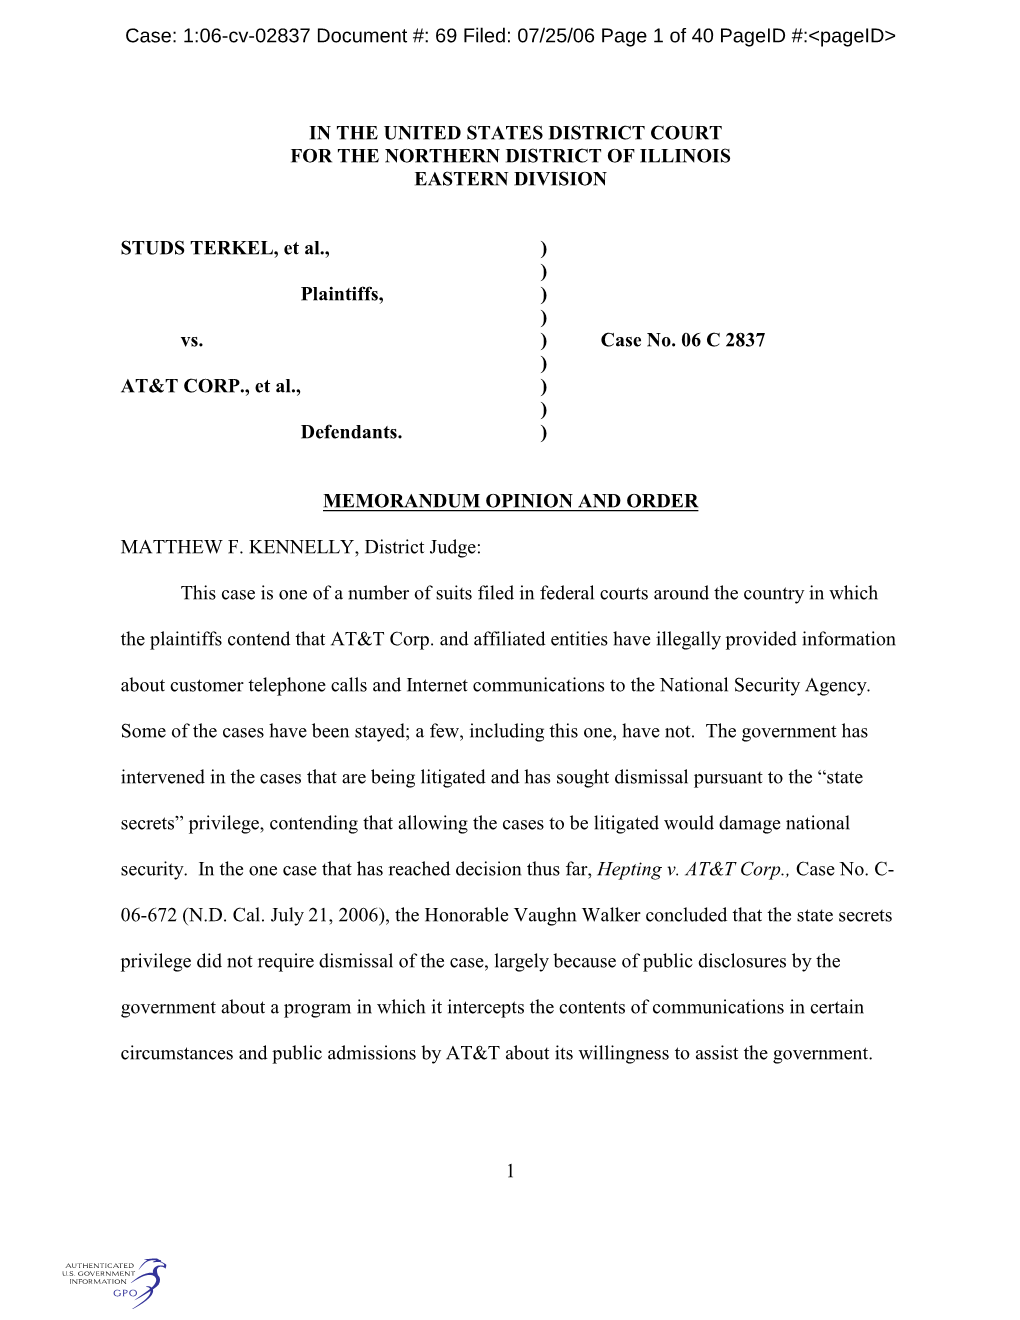 Plaintiffs Have Filed a Putative Class Action Lawsuit Against AT&T Corp